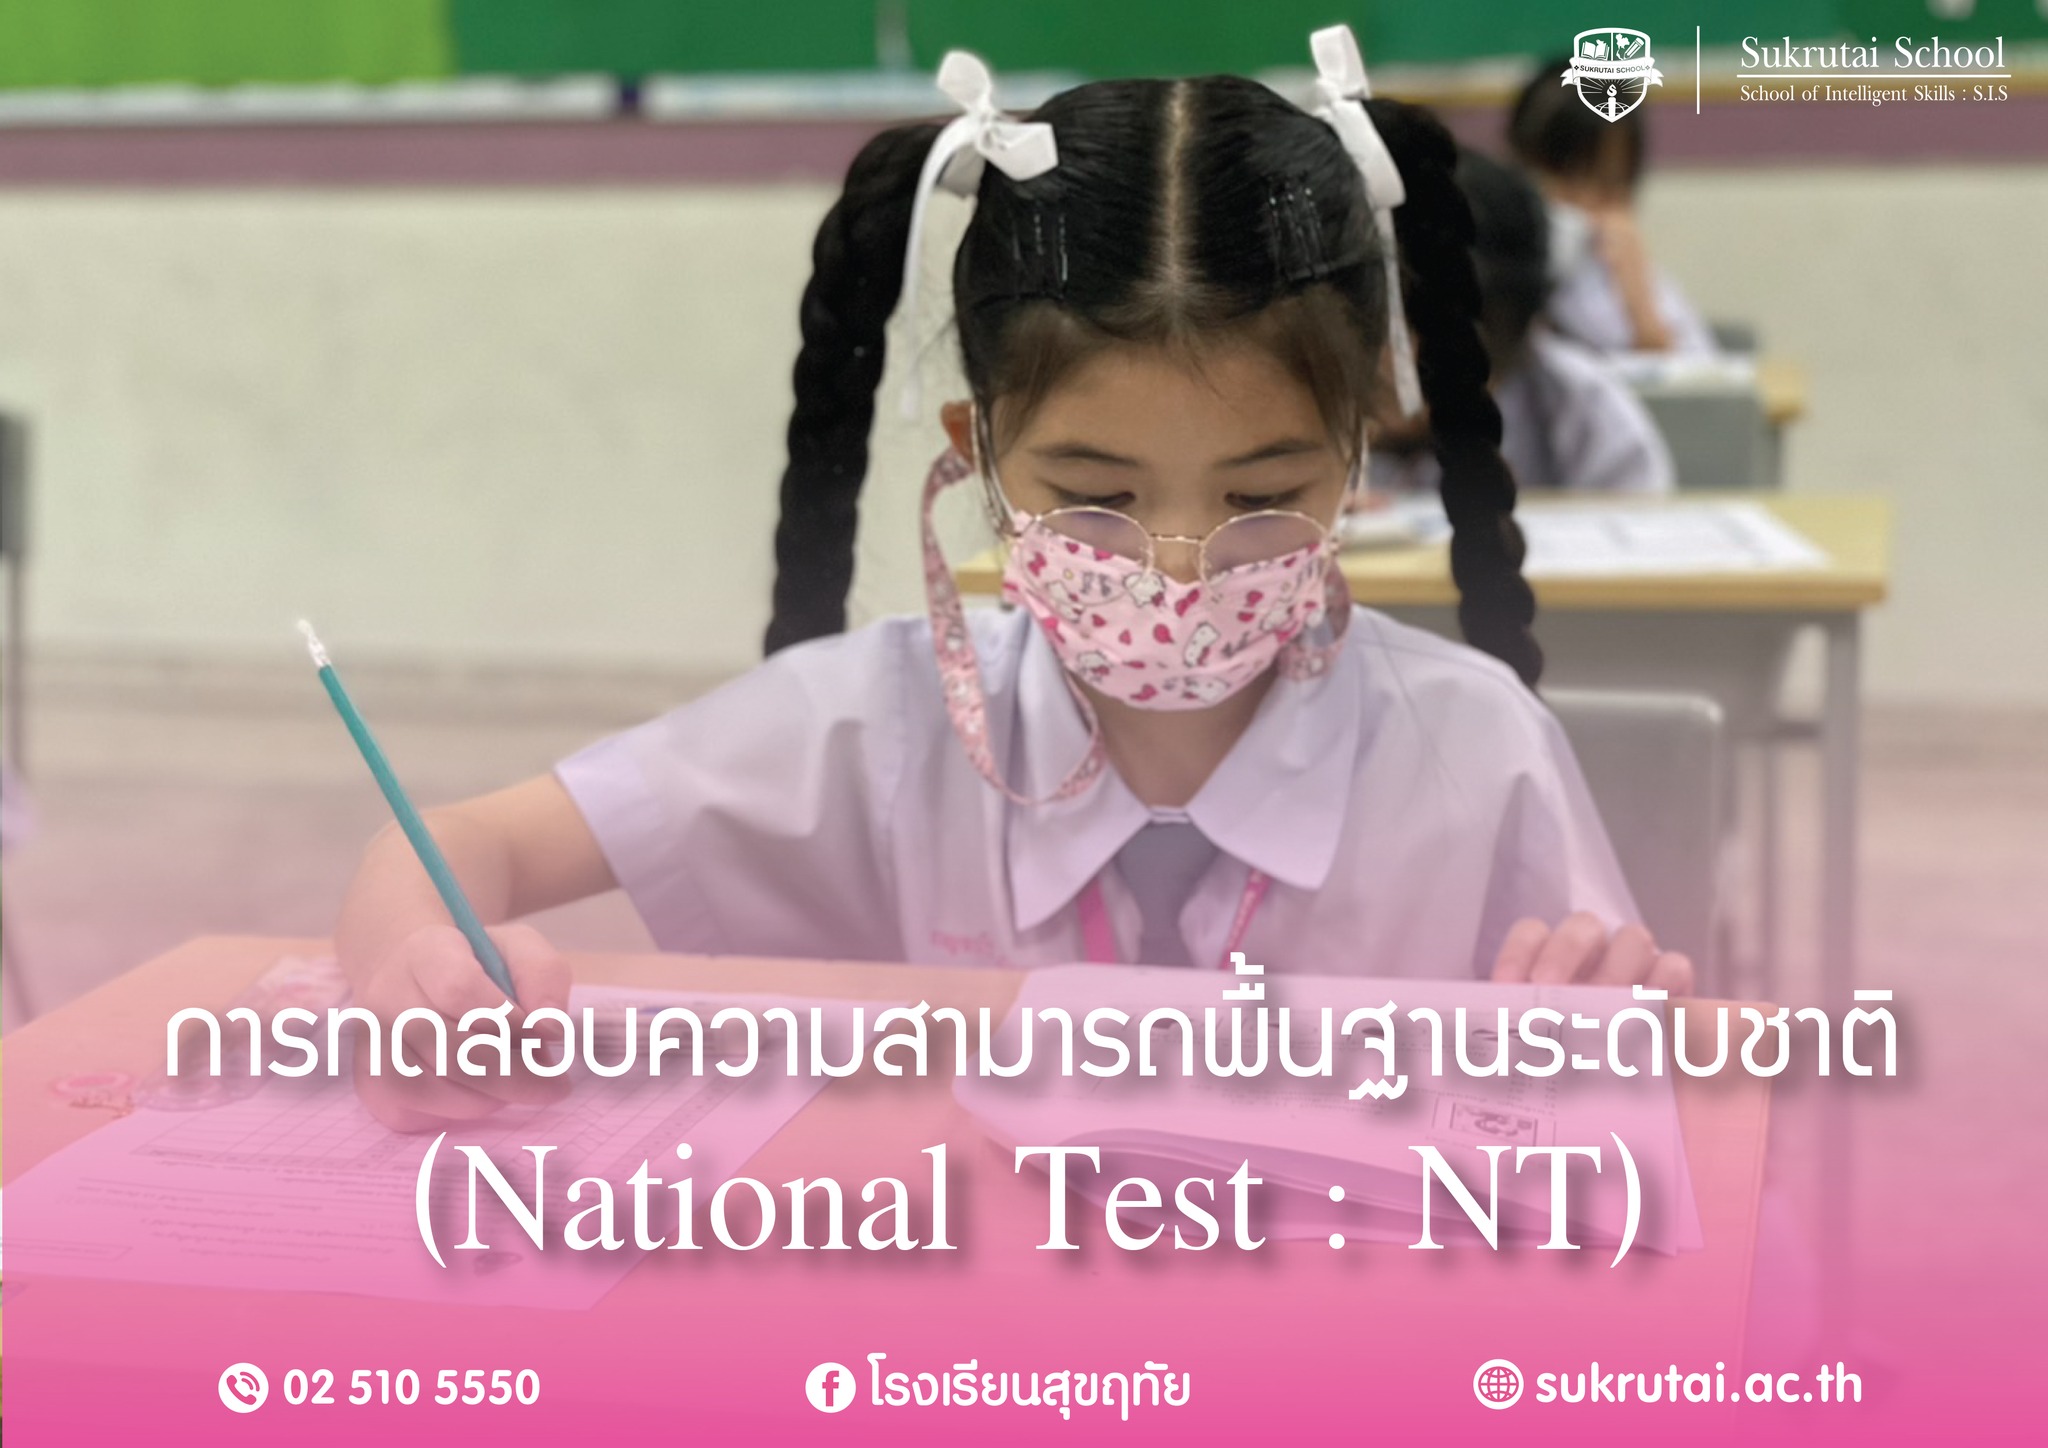 การทดสอบความสามารถพื้นฐานระดับชาติ (National Test : NT)